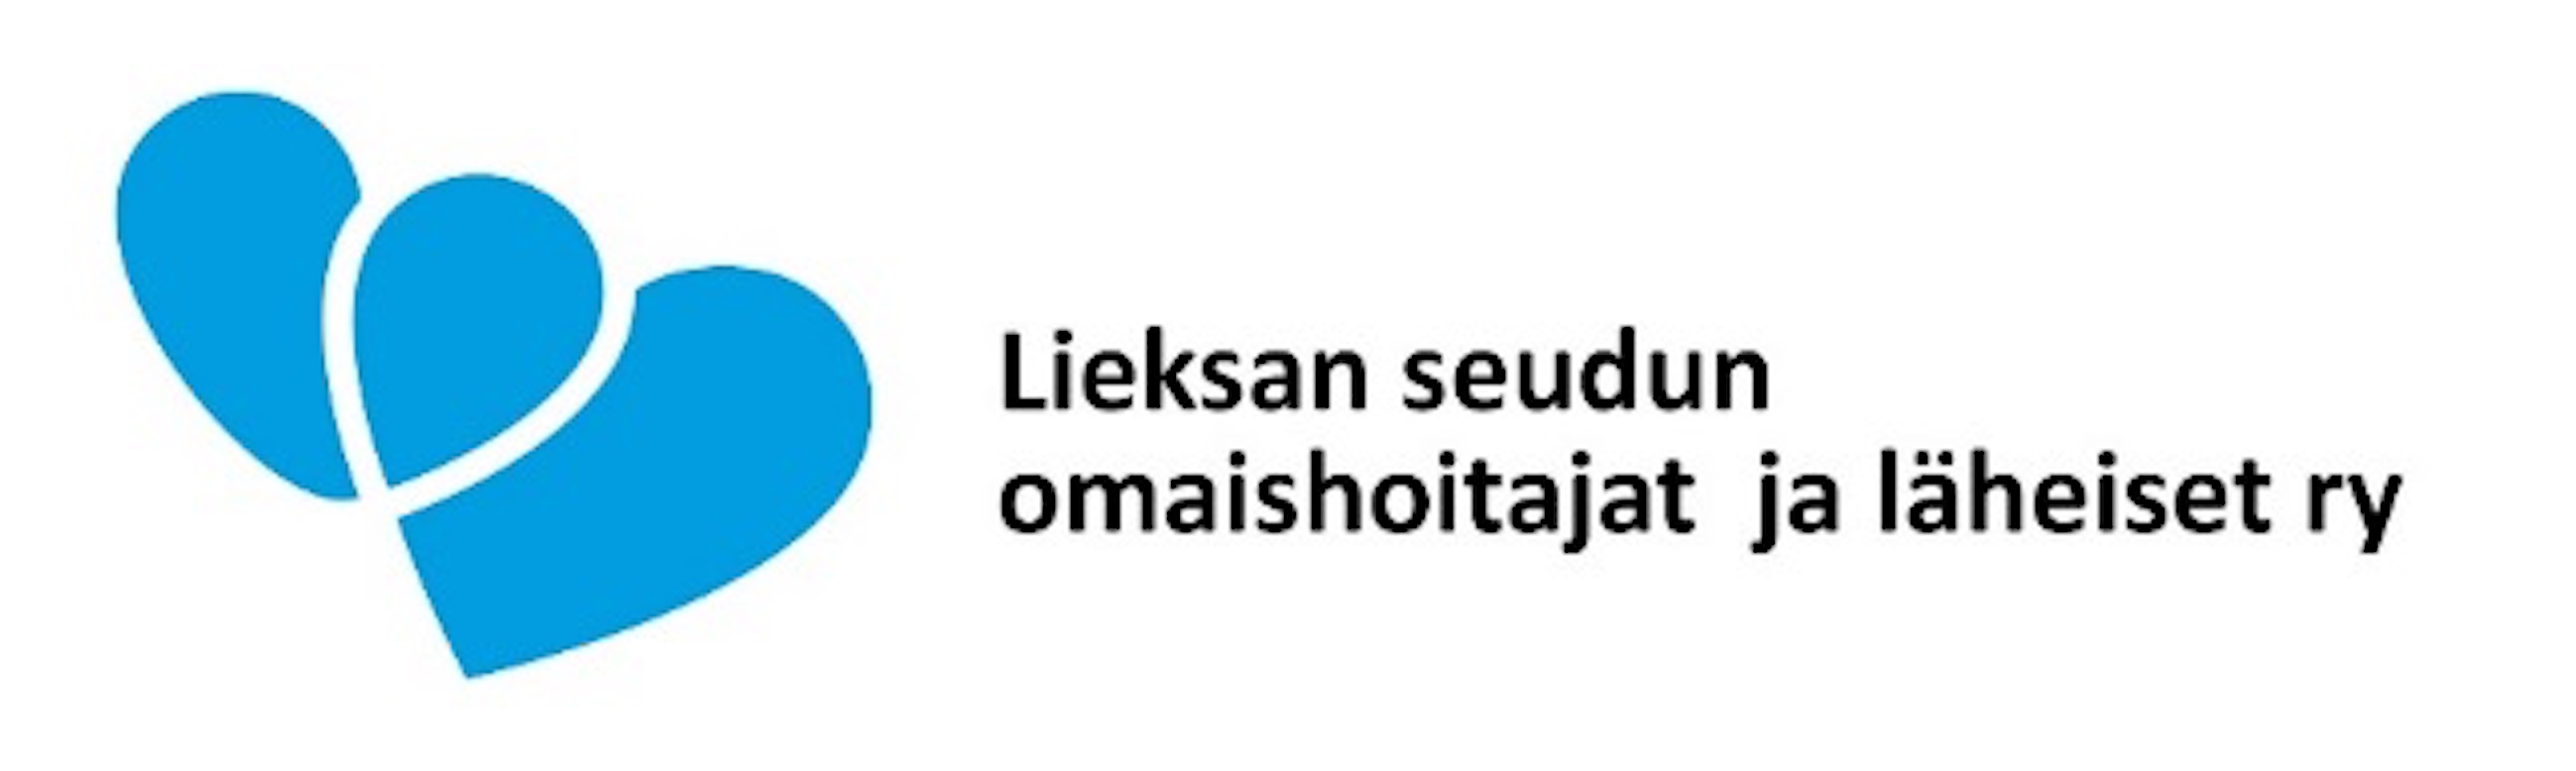 Logo, Lieksan seudun omaishoitajat ja läheiset ry